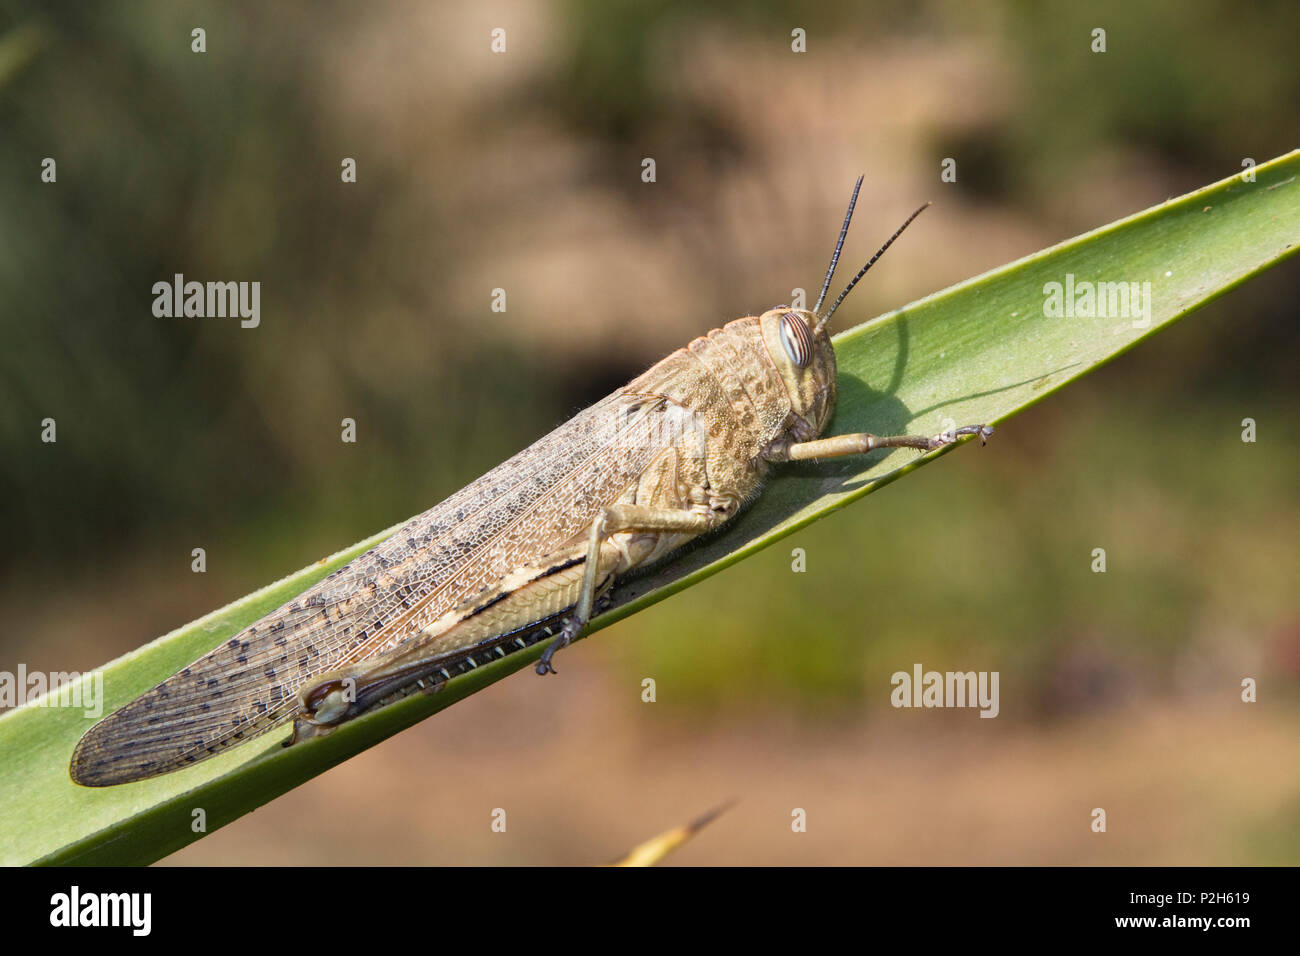 https://c8.alamy.com/comp/P2H619/migratory-locust-locusta-migratoria-portugal-P2H619.jpg